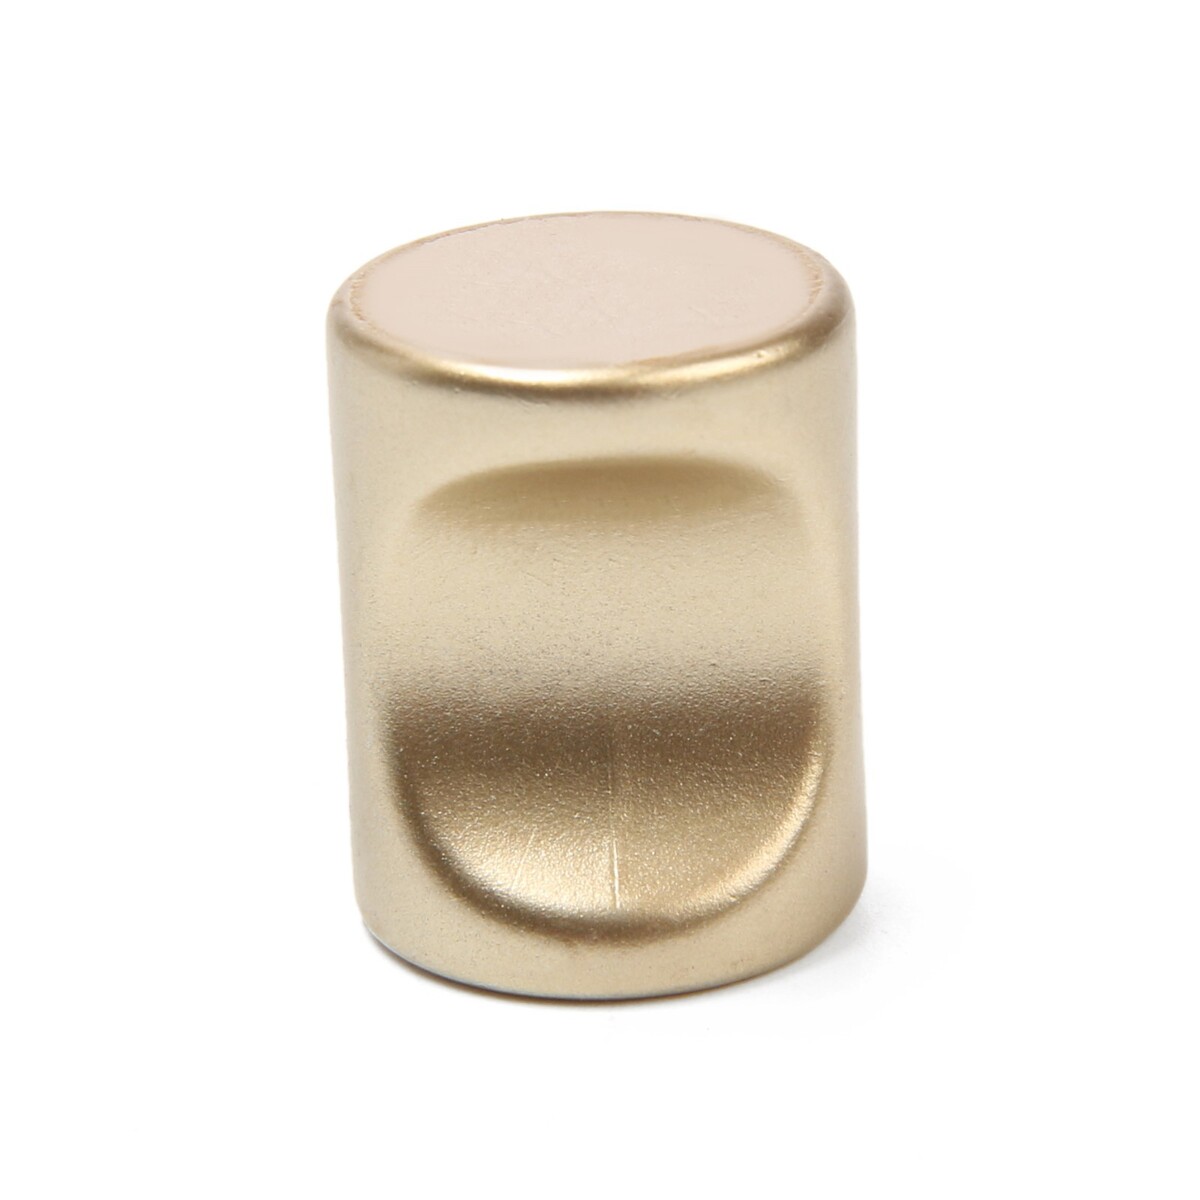 Ручка-кнопка cappio, рк102, d=18 мм, пластик, цвет матовое золото ручка дверная аллюр оскар sb 1370 00011185 матовое золото